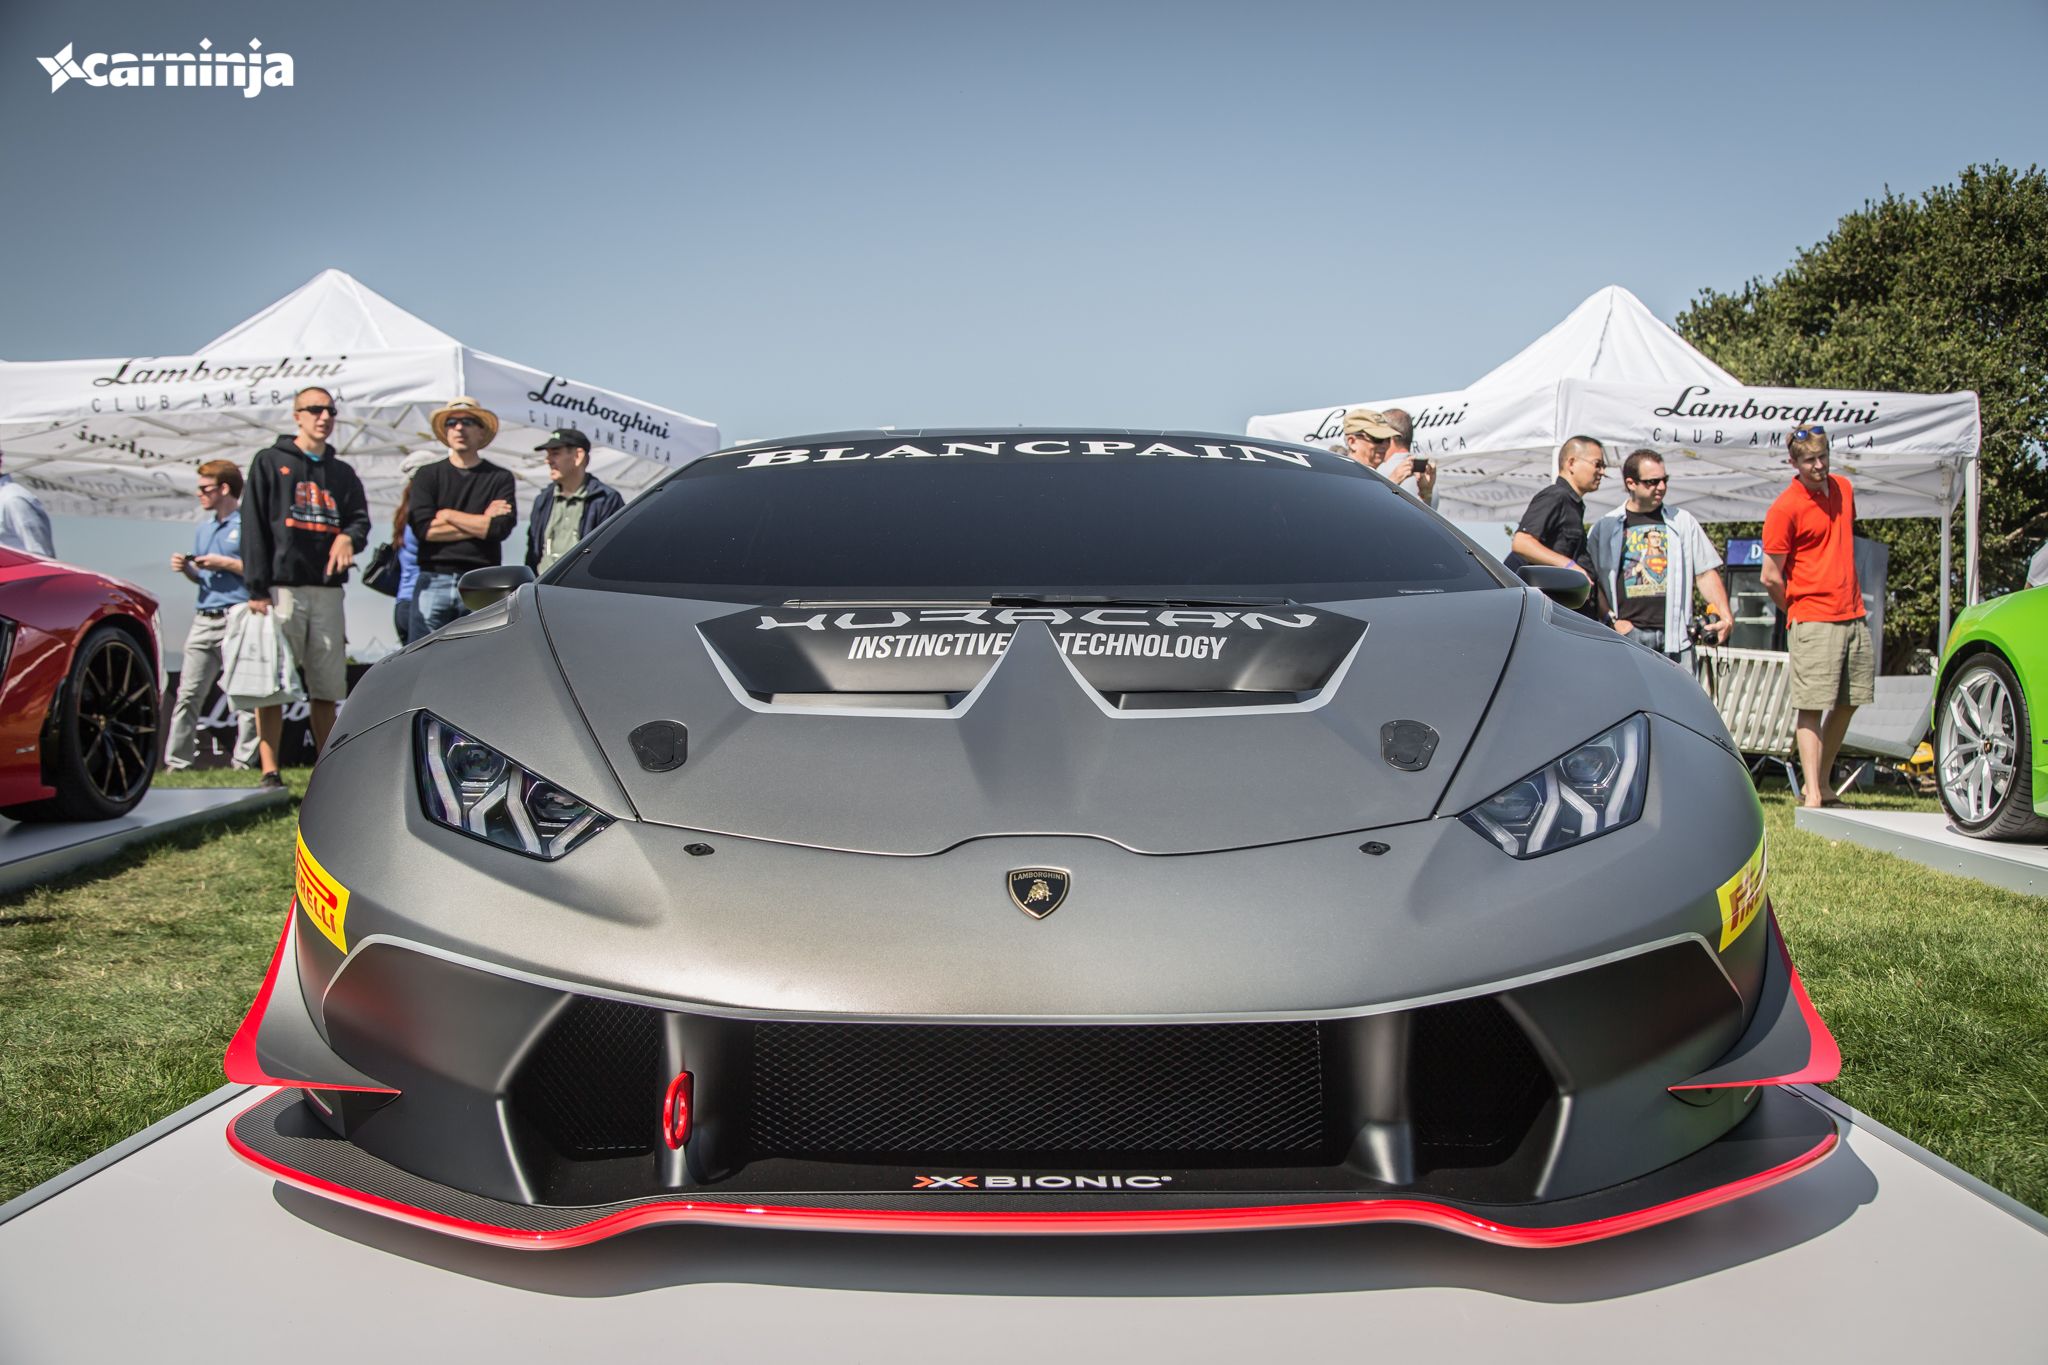 2015 Lamborghini Huracan LP620-2 Super Trofeo